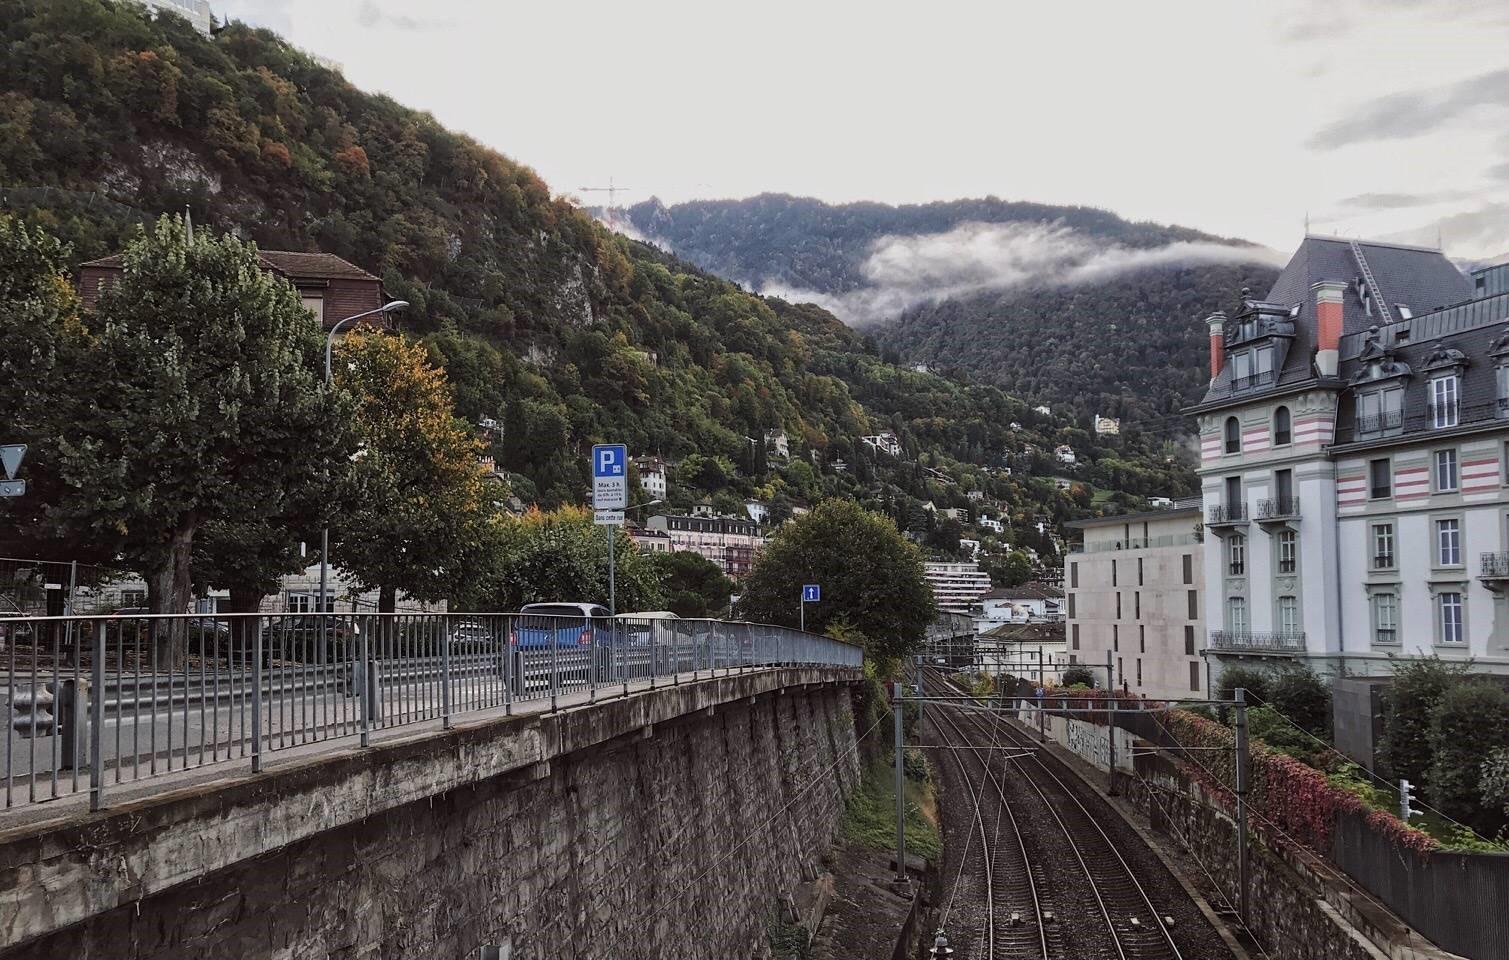 初到瑞士蒙特勒是阴雨天，从洛桑下火车的第一眼觉得，美得不真实，像是走进了某个电影场景，拖着旅行箱一路到学校，秋天有些凉意，但是心脏跳得很快